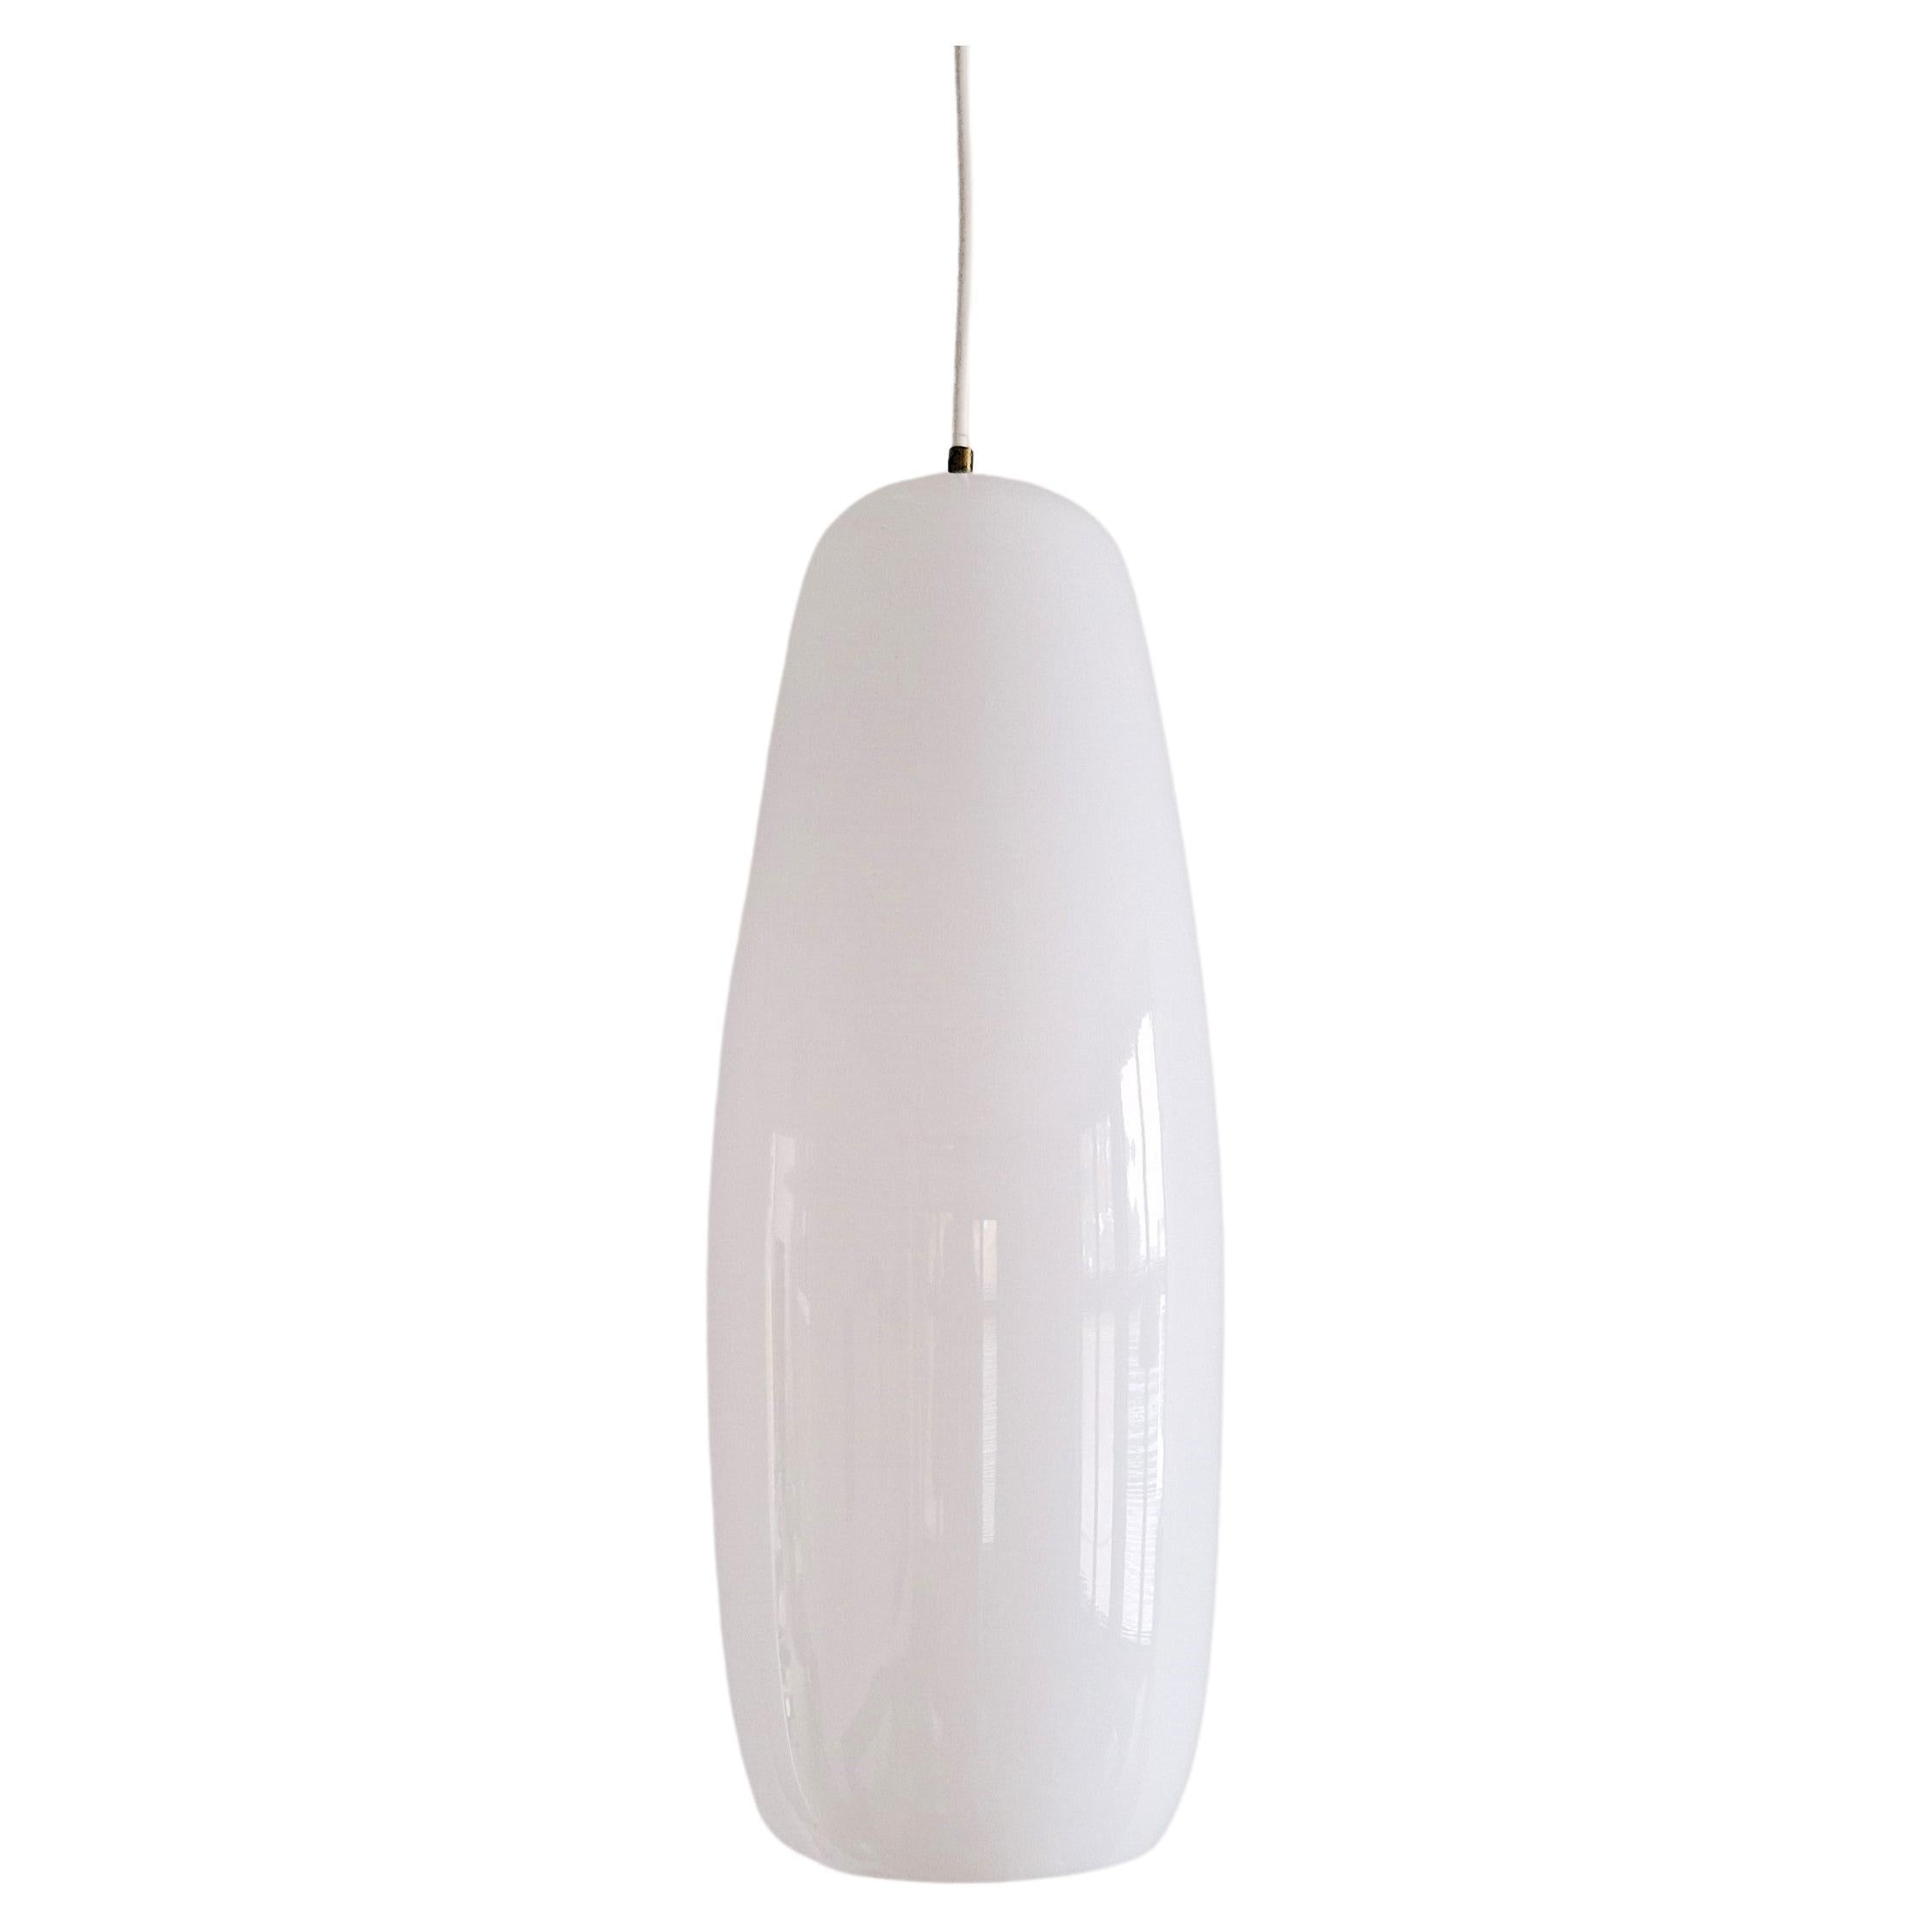 Large and rare white Murano glass pendant lamp by Massimo Vignelli for Venini